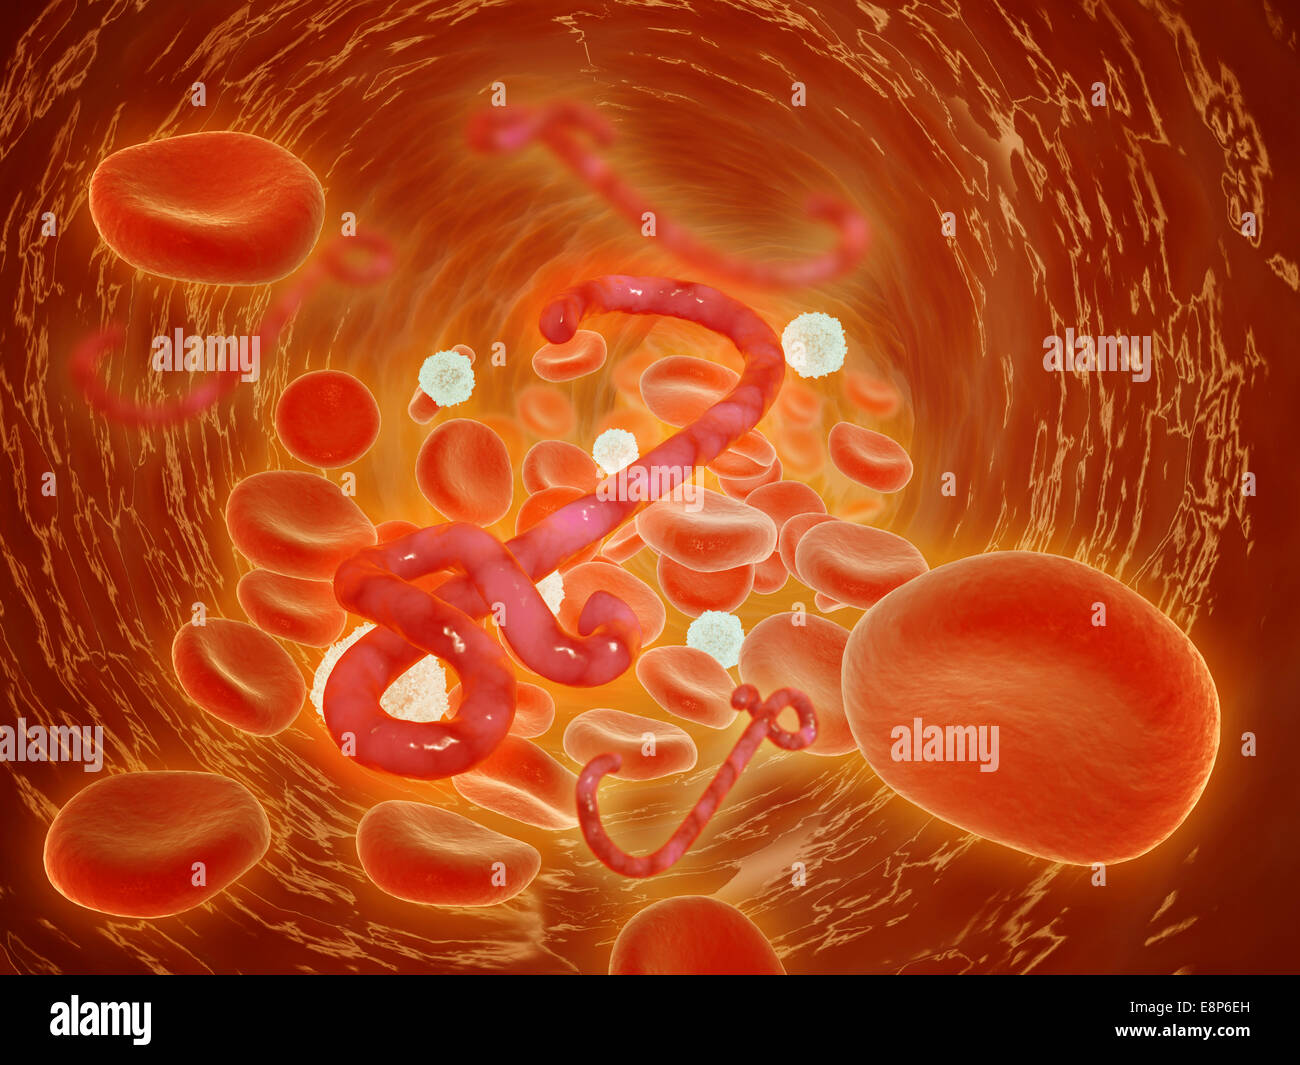 Conceptual image of ebola virus in artery. Stock Photo